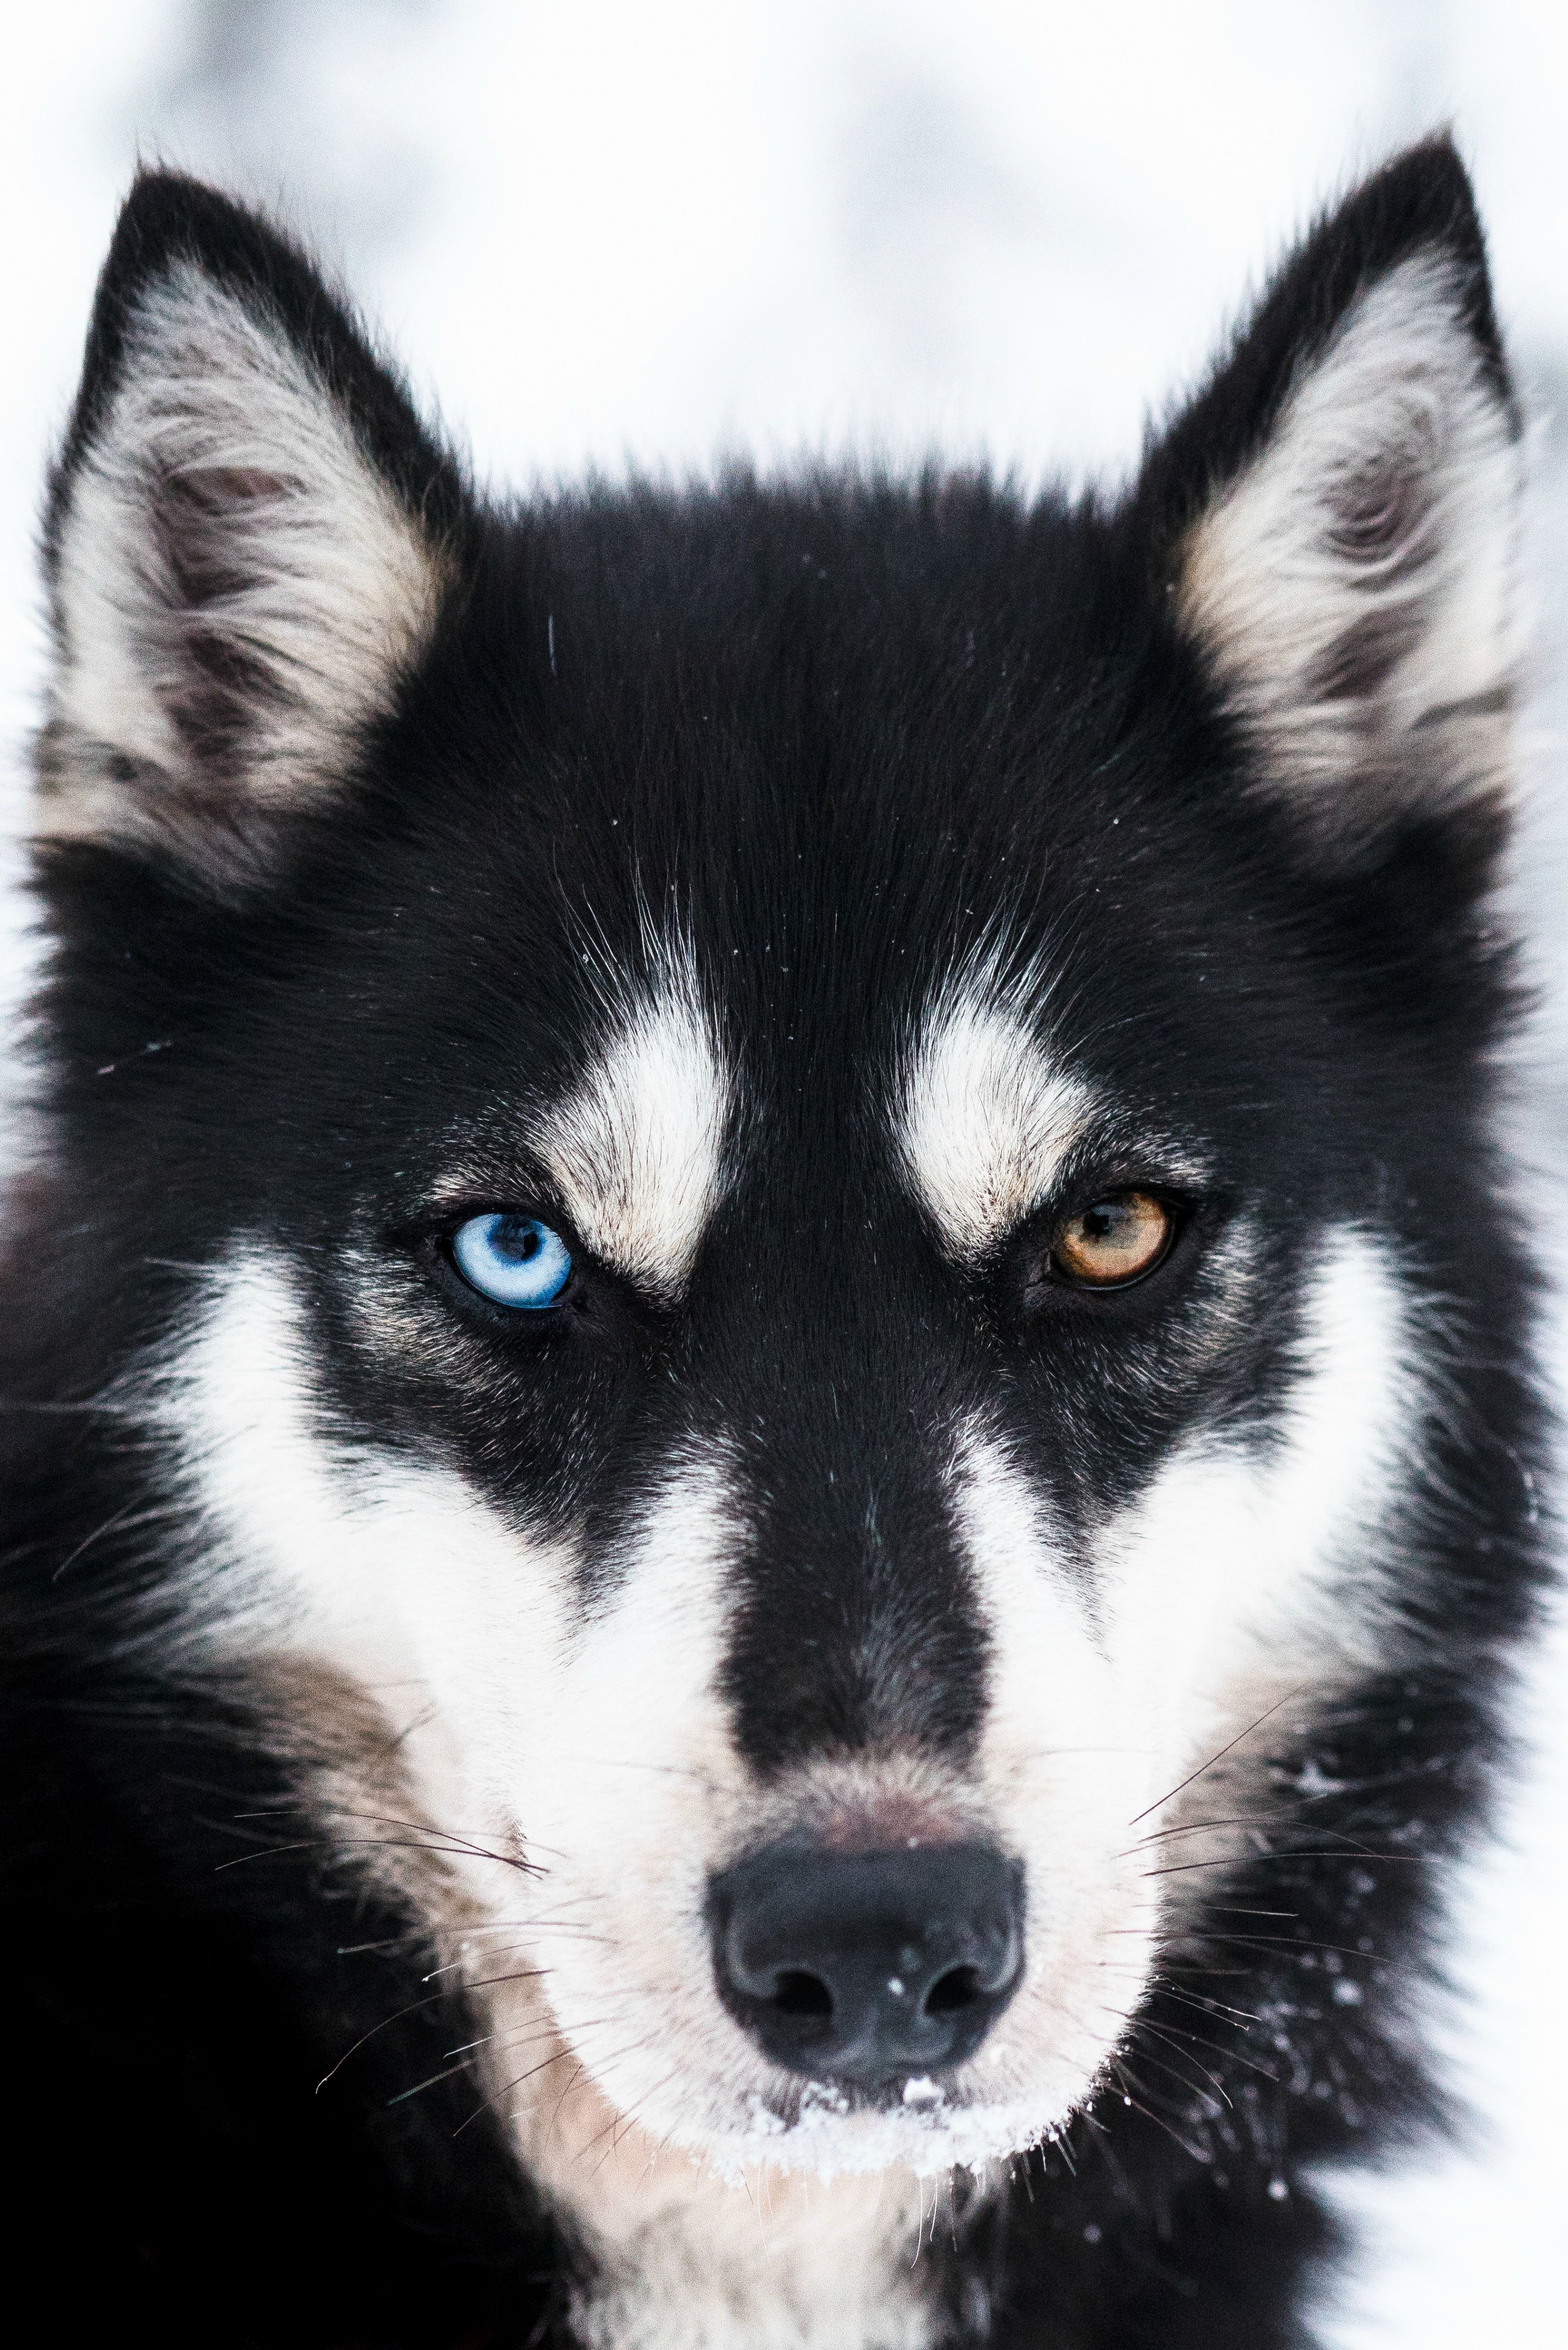 Black husky, dog portrait photography. | Dog Photography | Pinterest ...